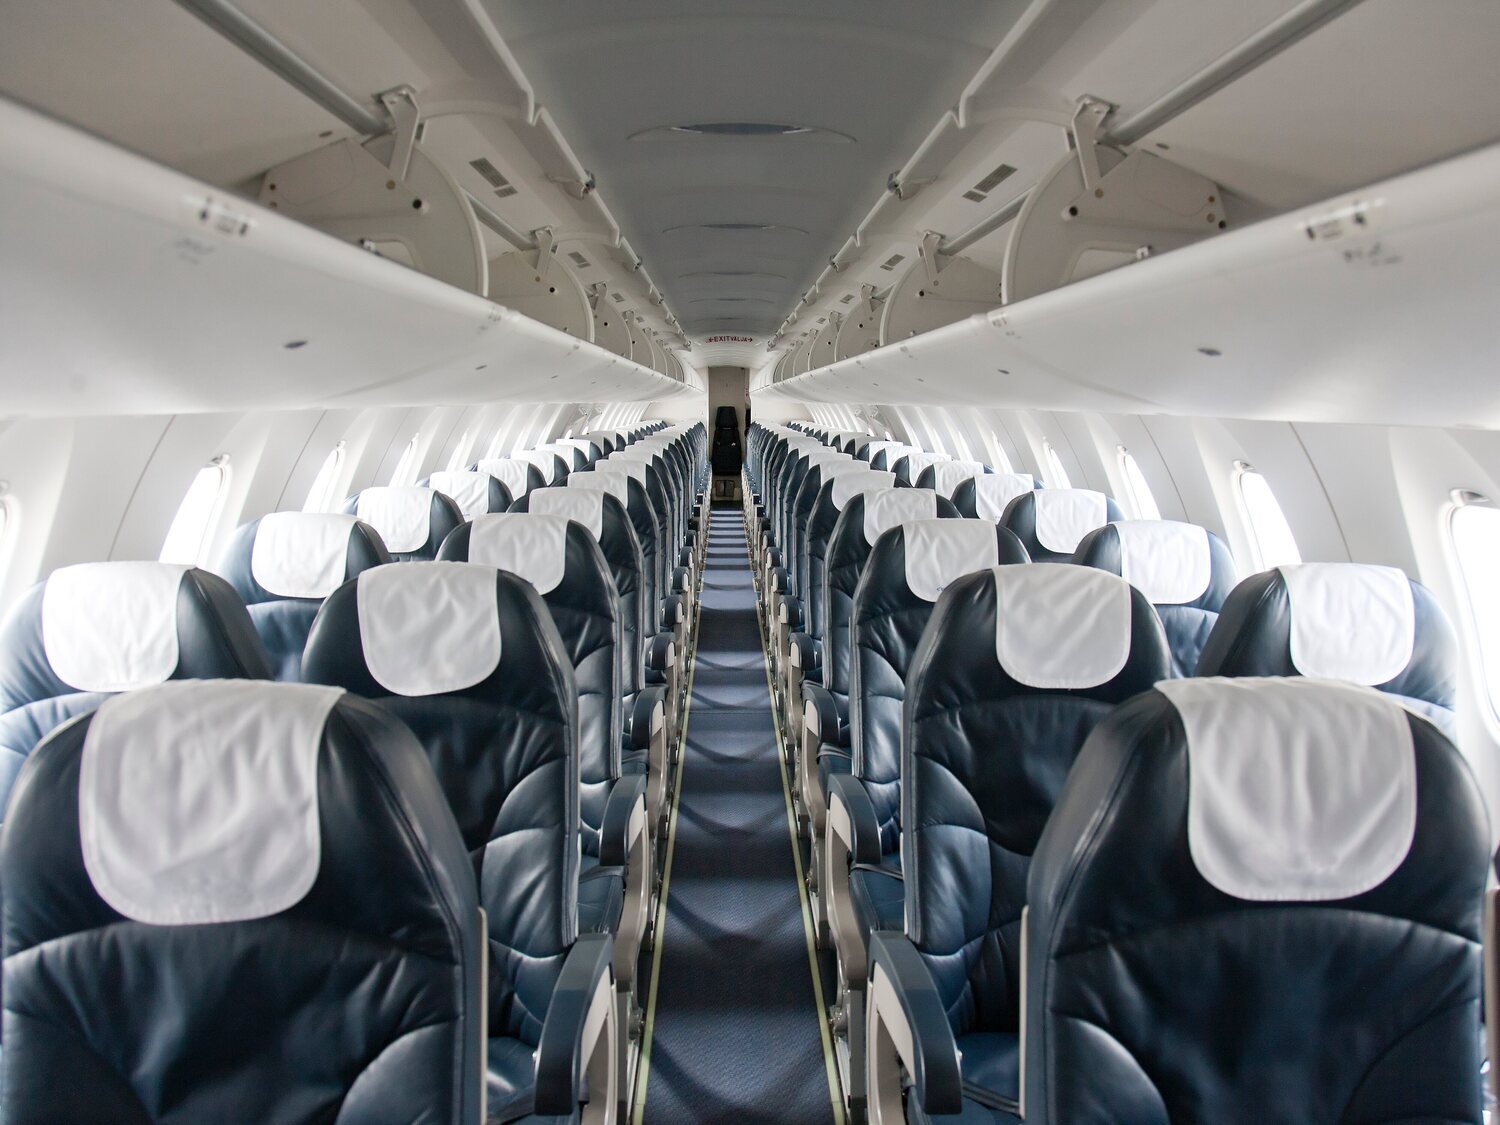 Las filas y los asientos más seguros del avión